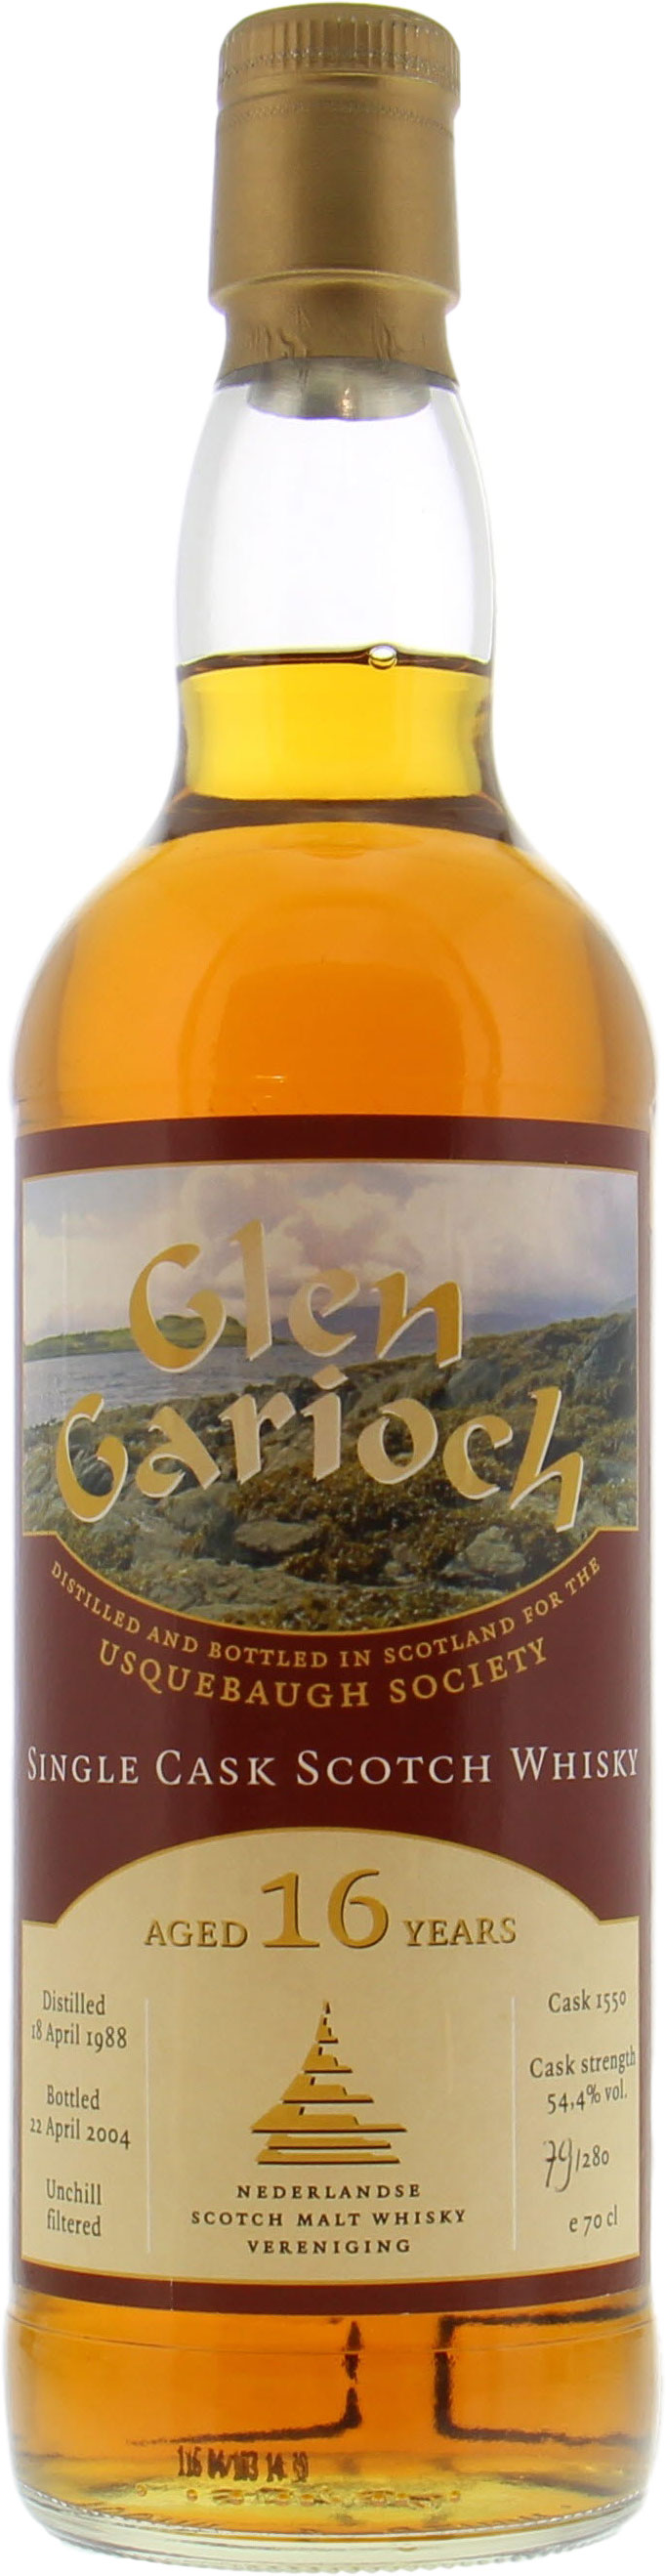 Glen Garioch - 16 Years Old Usquebaugh Society Cask 1550 54.4% 1990 No Original Container